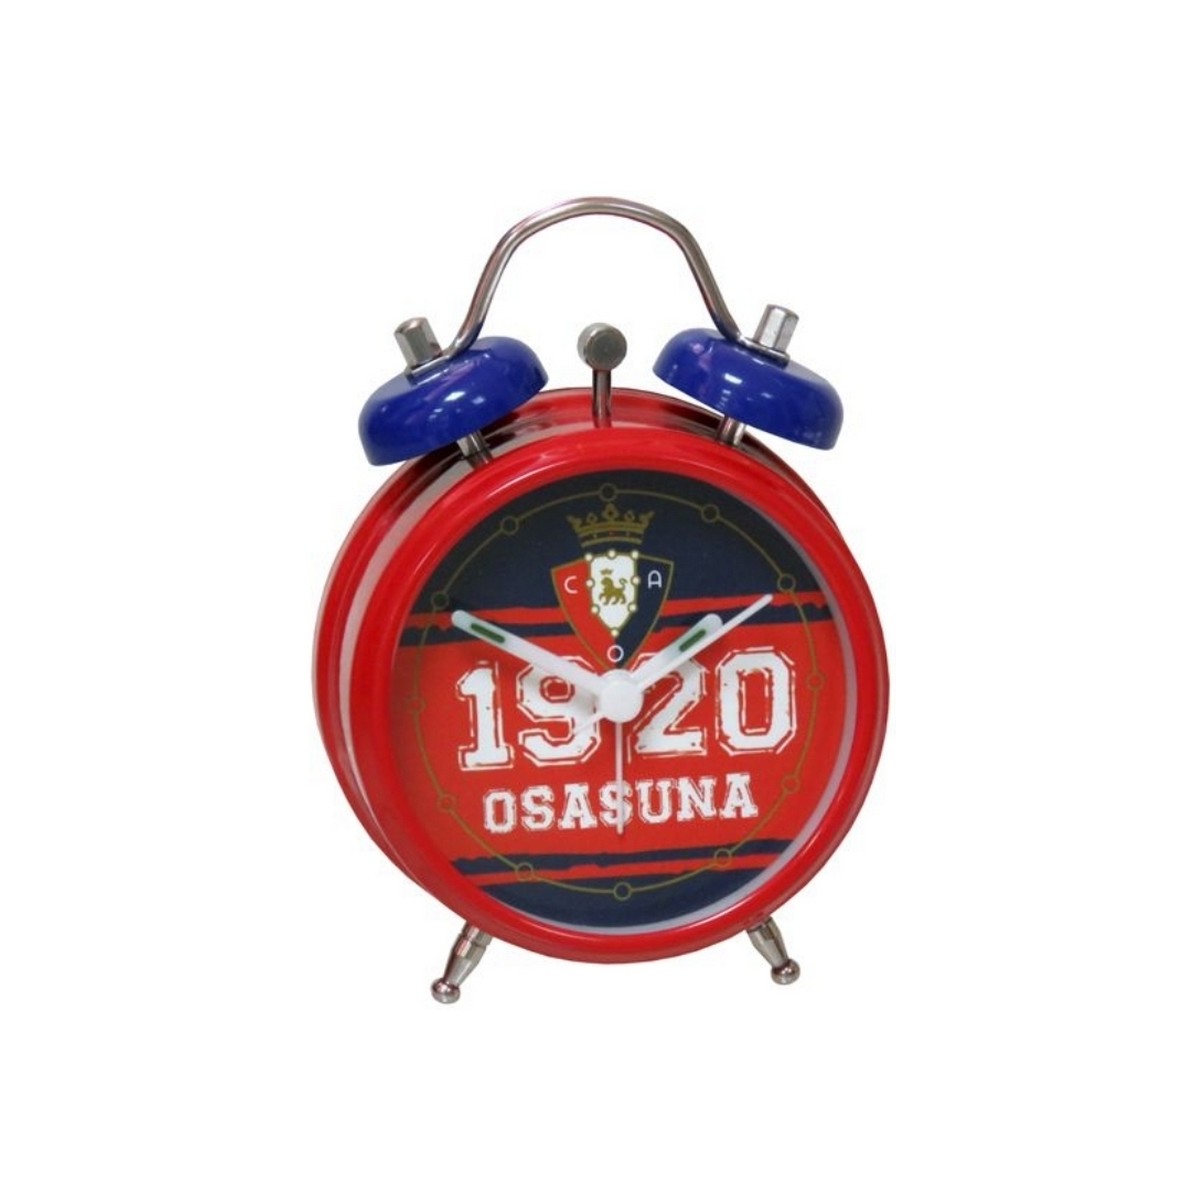 Relógios & jóias Relógios Digitais Ca Osasuna RD-01-SA Vermelho